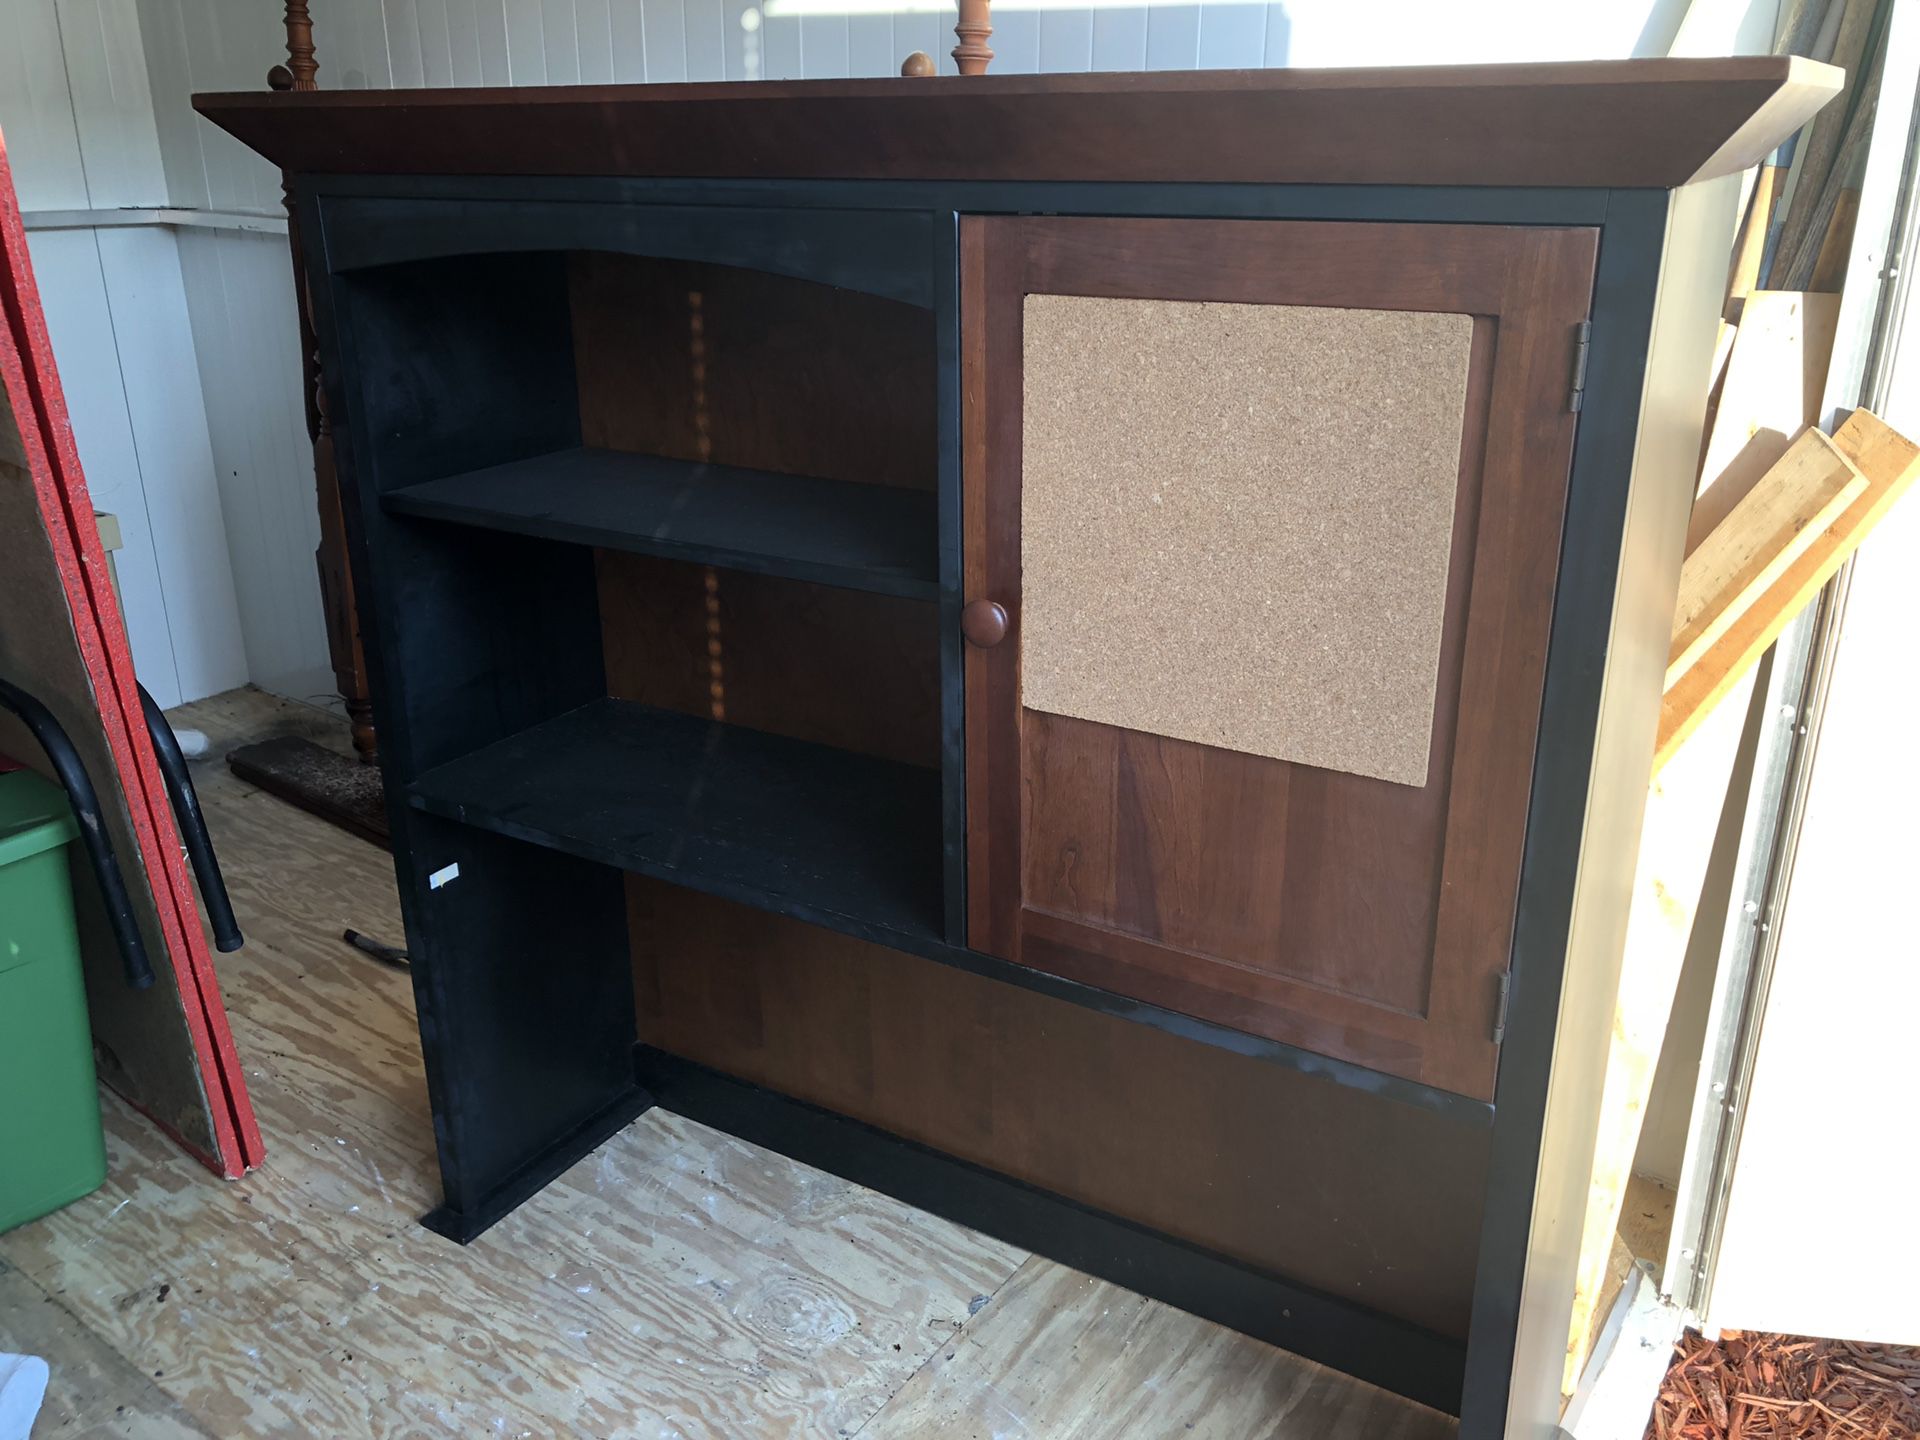 Shelf/Organizer Space